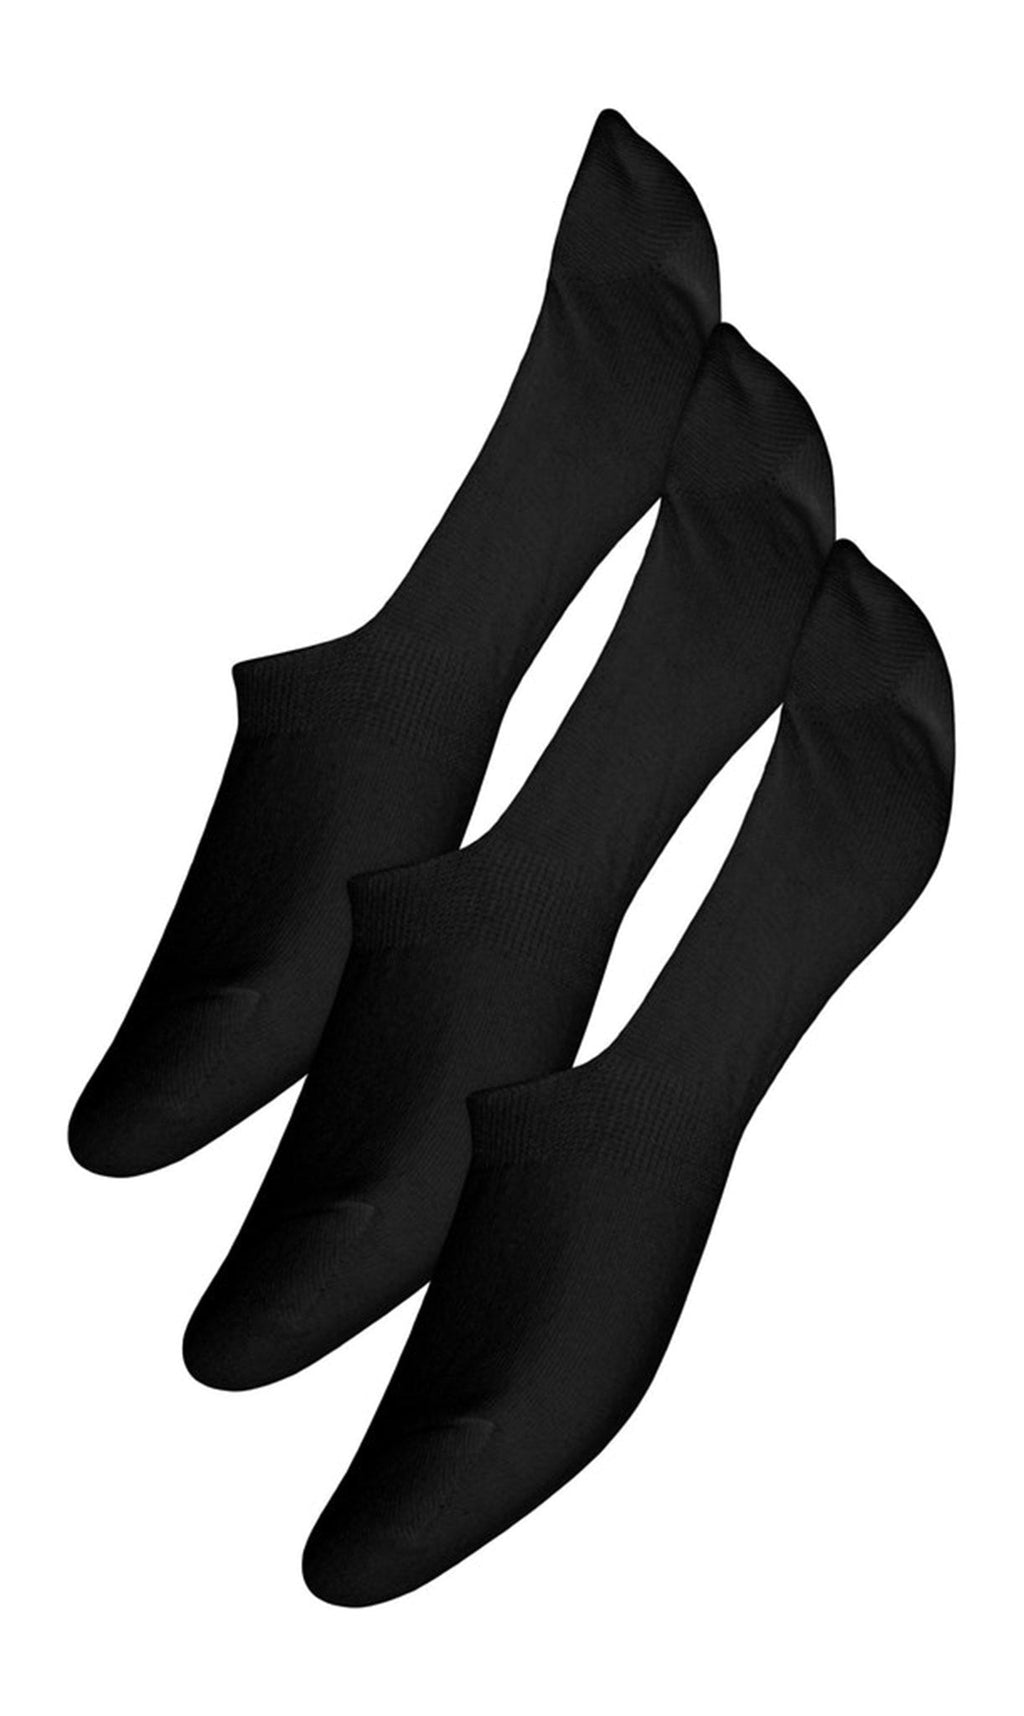 Cindy čarape 3 -paketi - crno